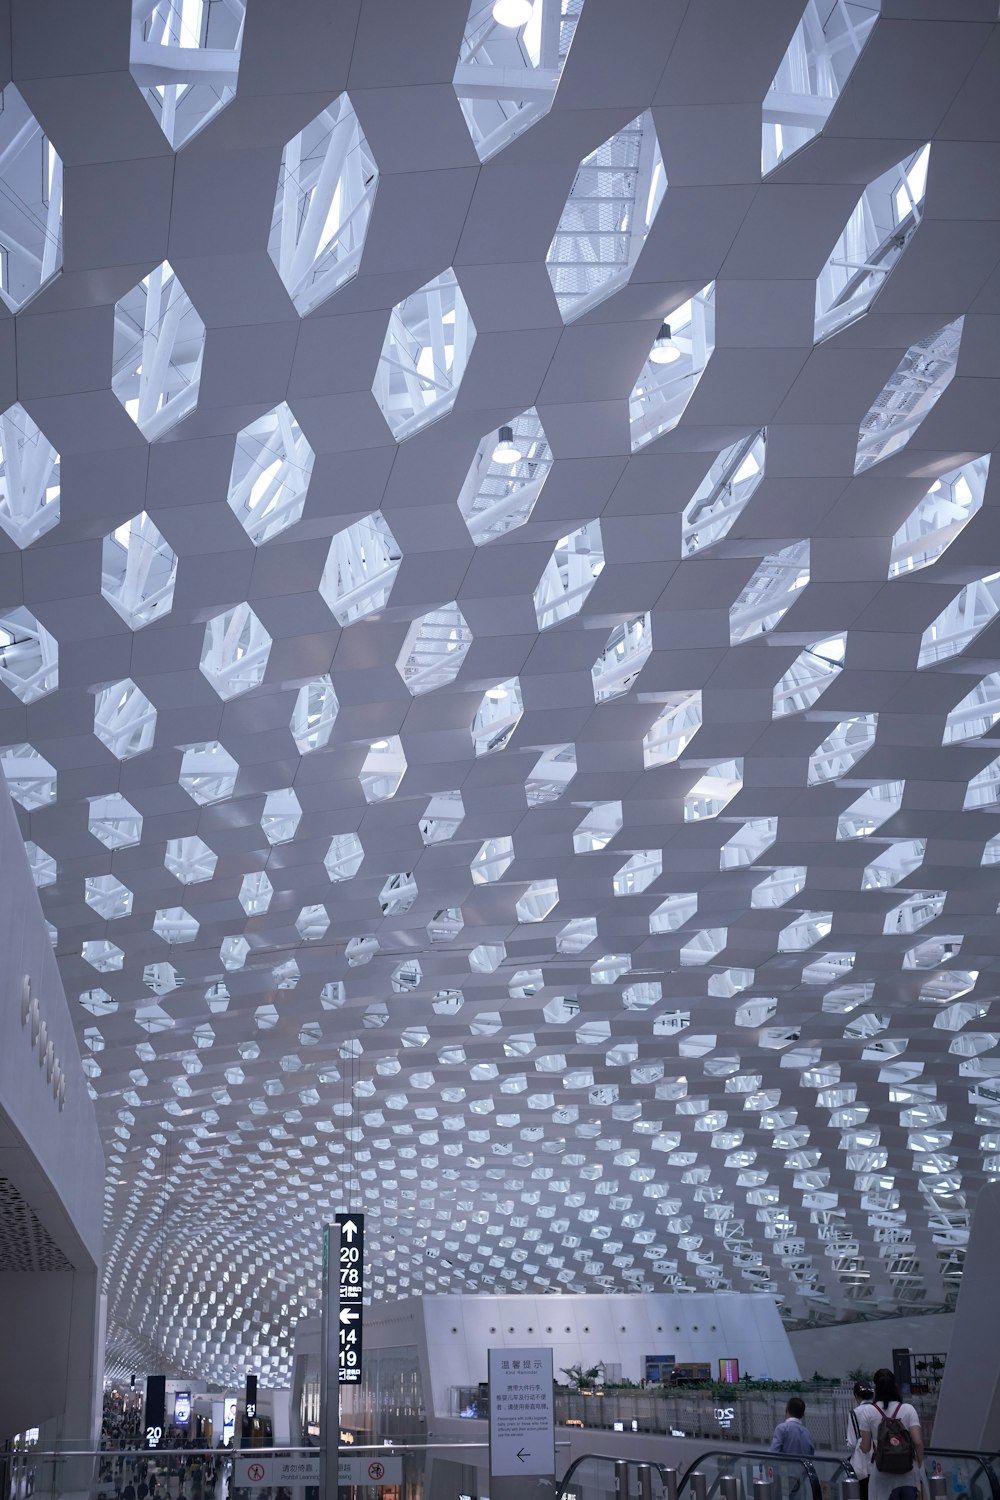 O teto do aeroporto é feito de blocos de vidro